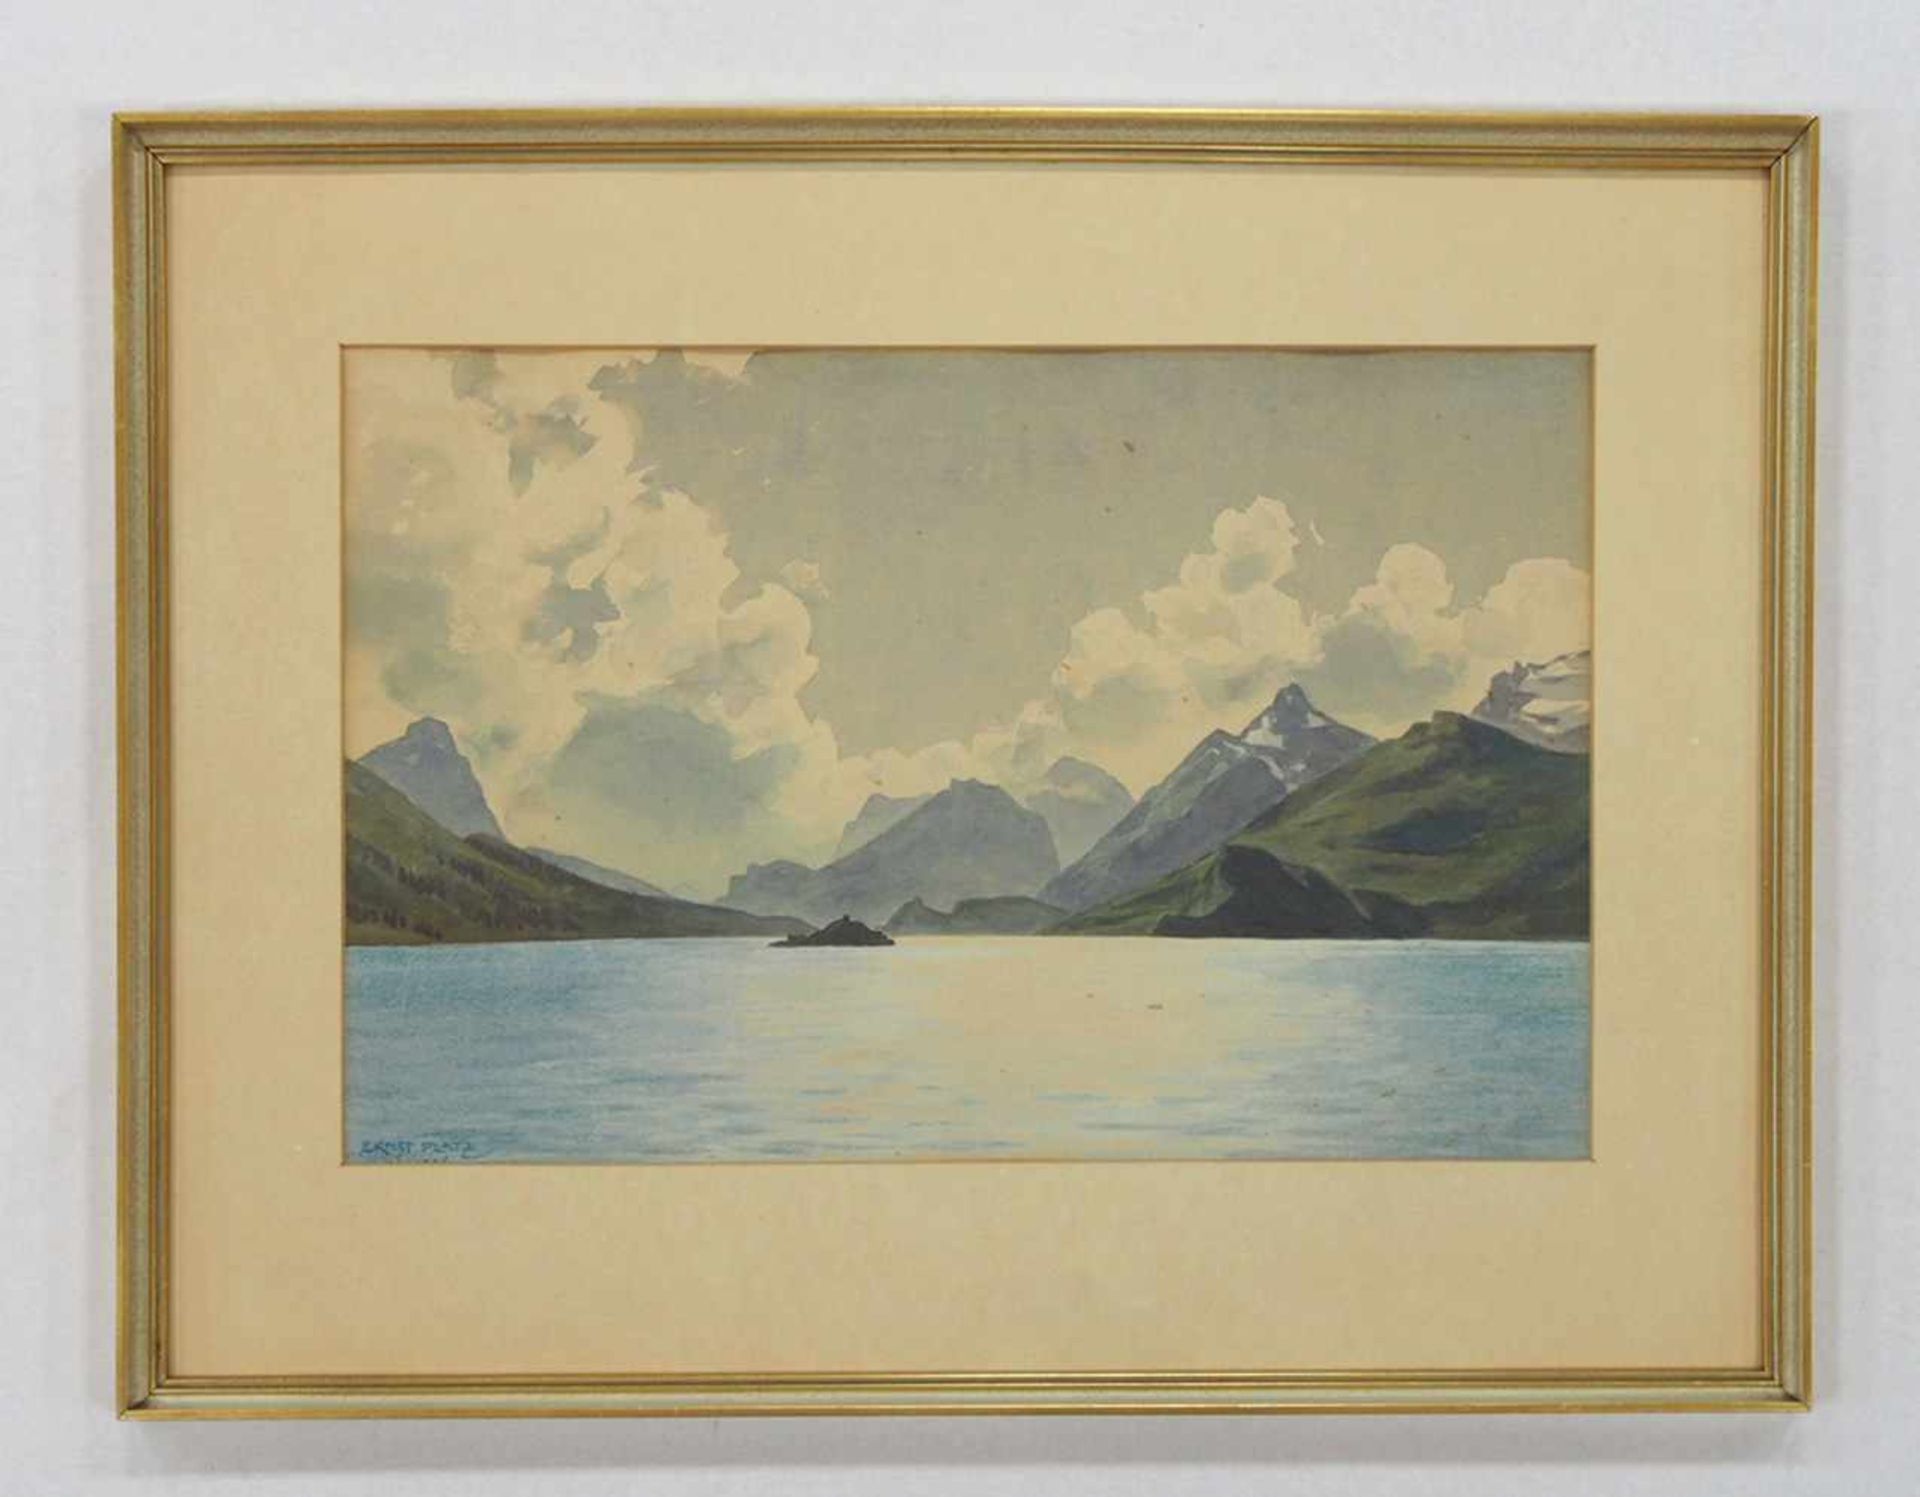 PLATZ, Ernst Heinrich1867-1940Gebirgssee mit InselAquarell auf Papier, signiert unten links, 27 x 41 - Bild 2 aus 2